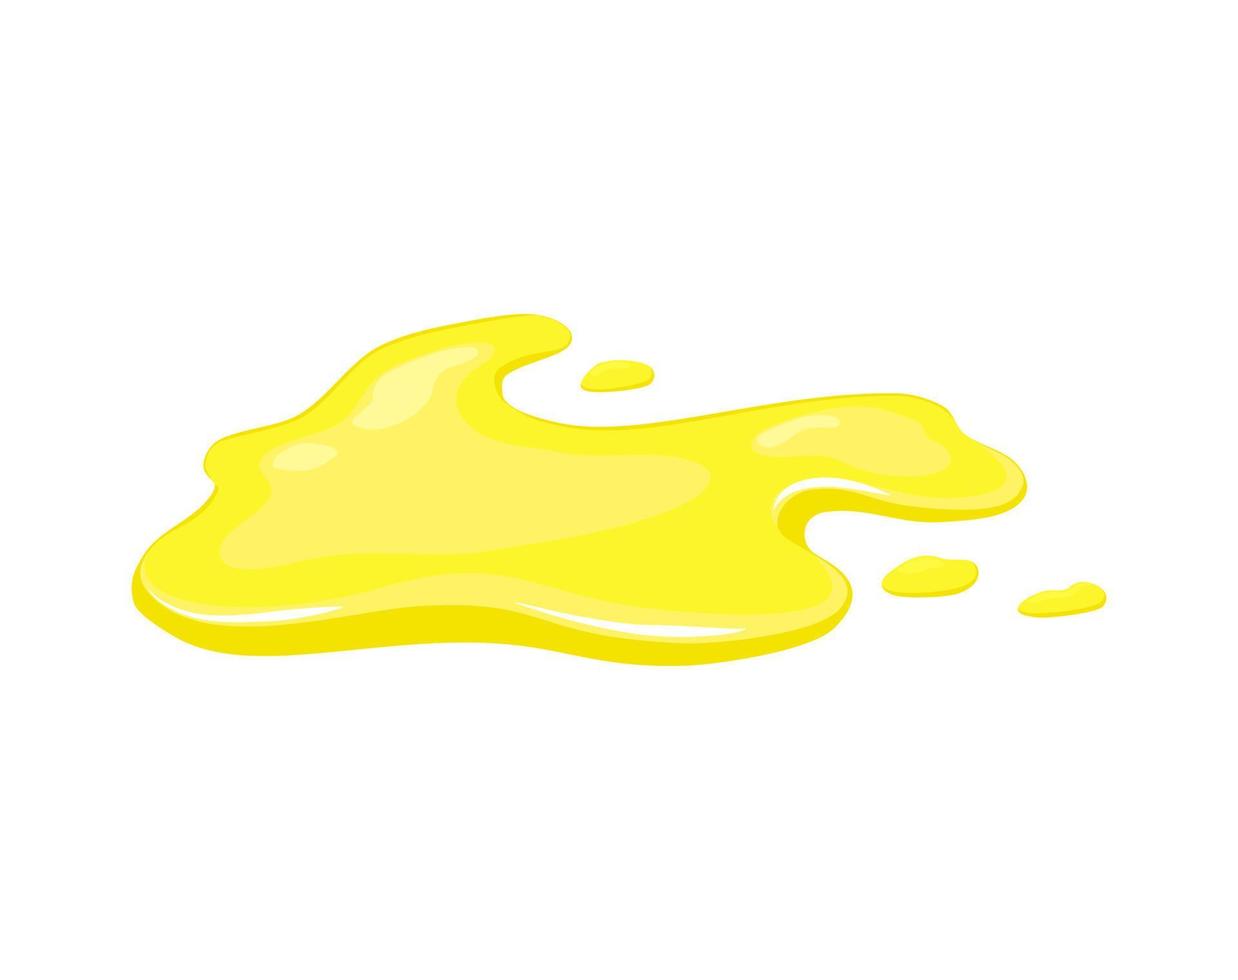 derramamento de suco. poça amarela de óleo vegetal ou urina. ilustração vetorial dos desenhos animados. vetor